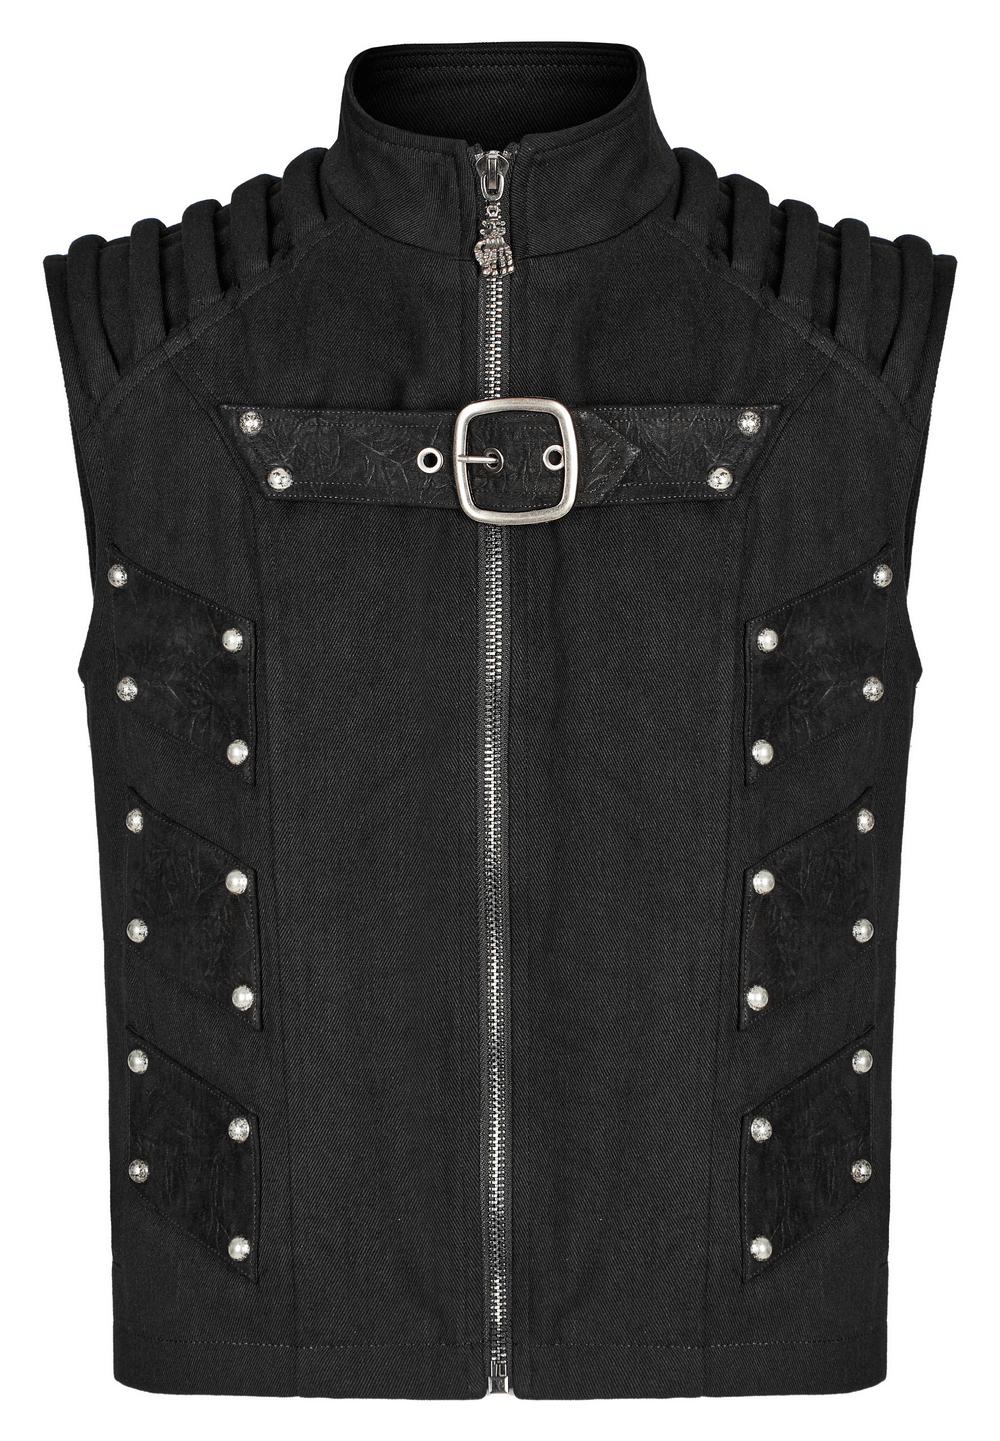 Studded Black Punk Vest - Urban Gothic Gear - HARD'N'HEAVY